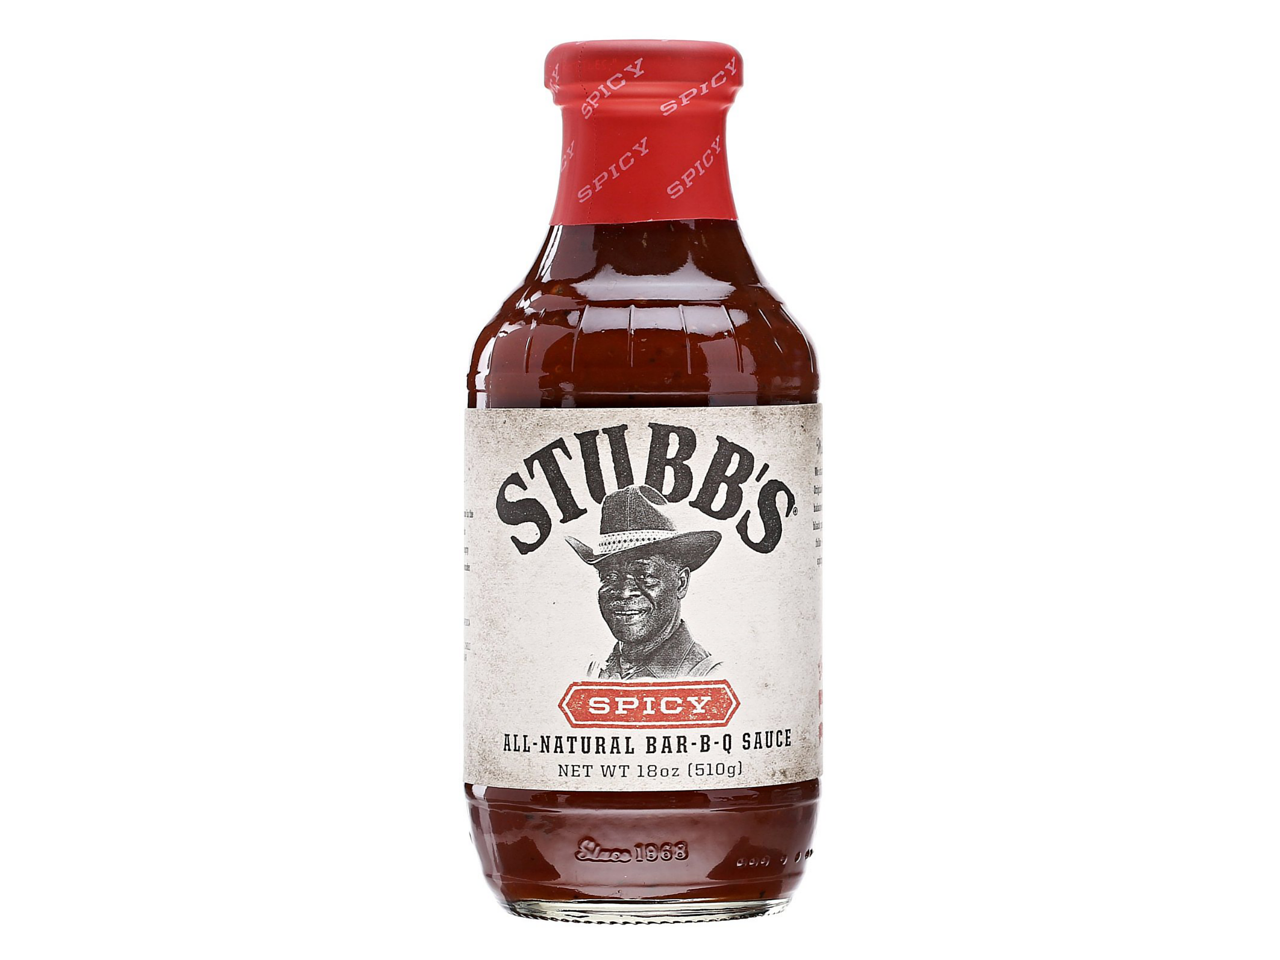 Stubbs Spicy Bar-B-Q Sauce 510g. 